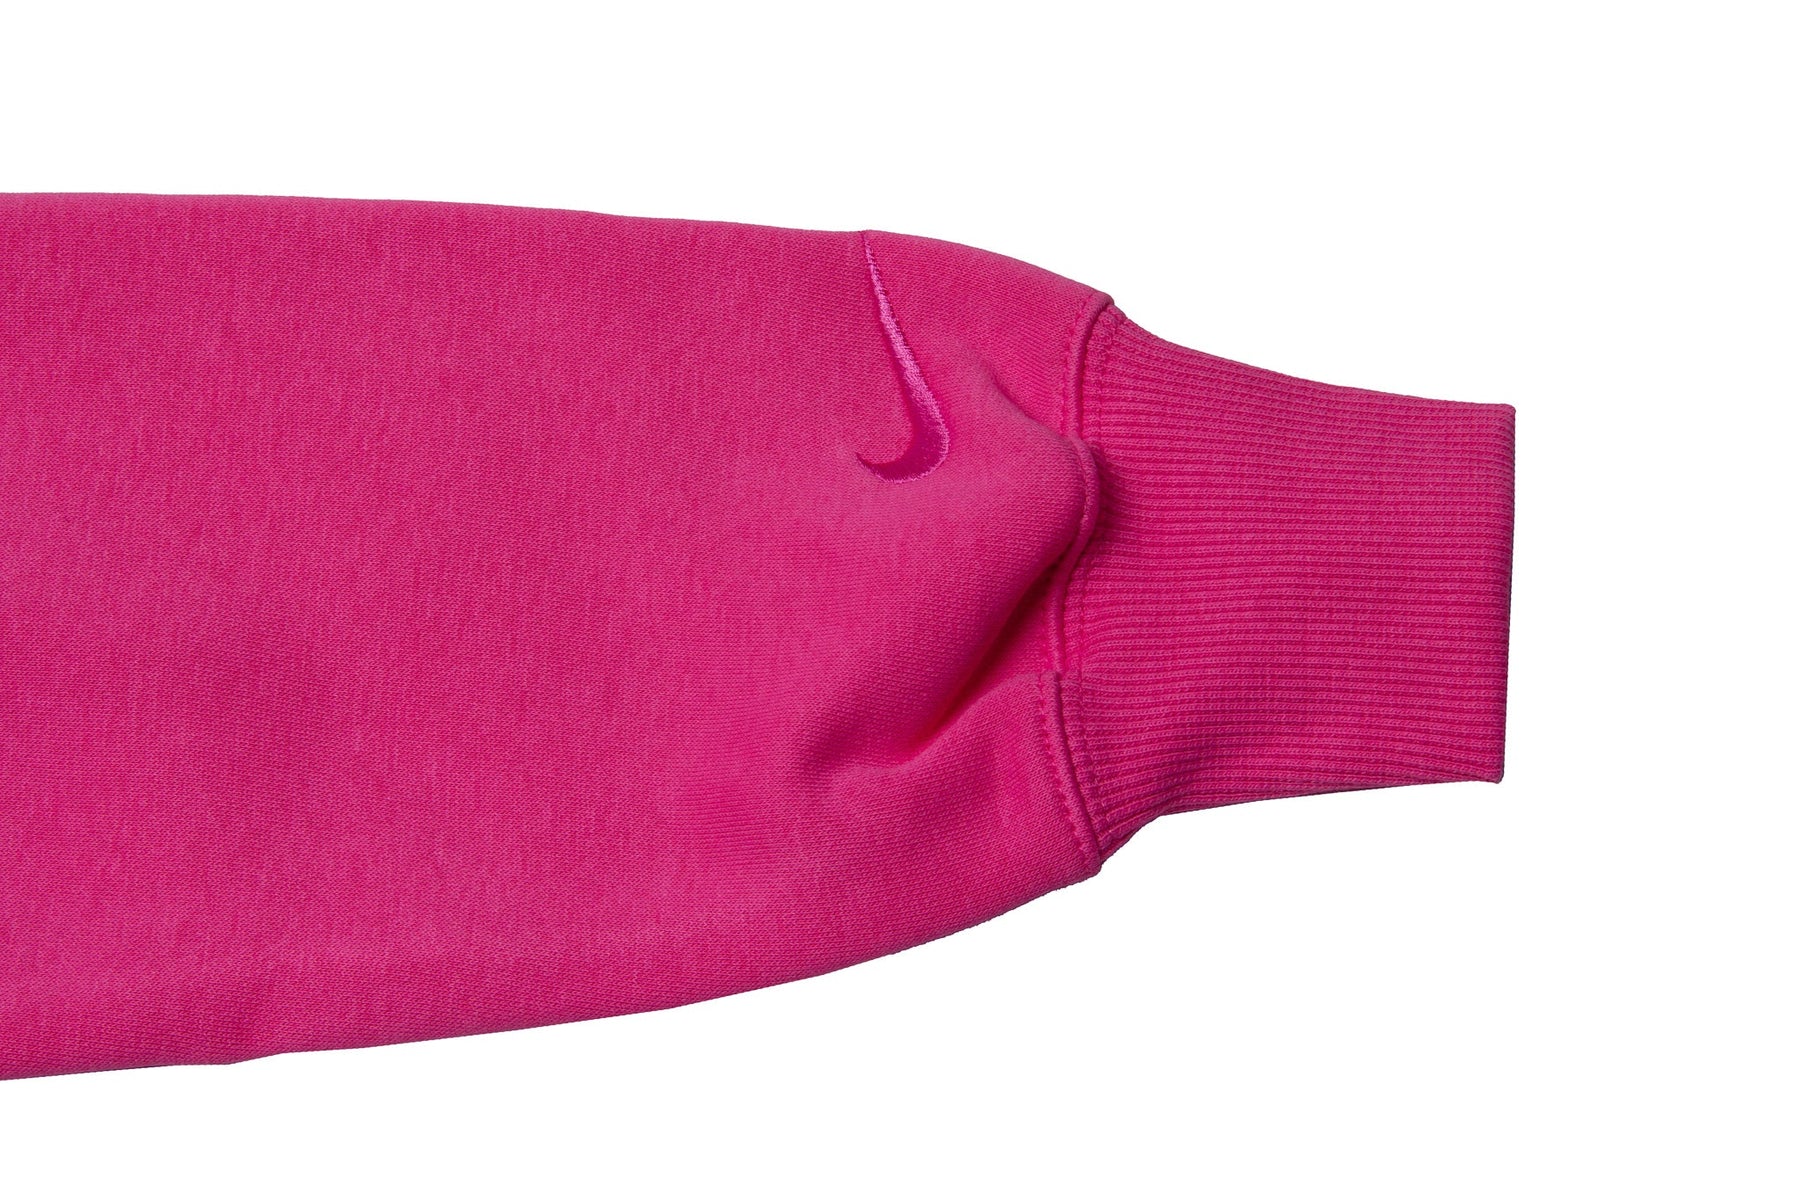 WMNS Nike Sportswear Día de Muertos 1/2 Zip Sweatshirt "Pink"